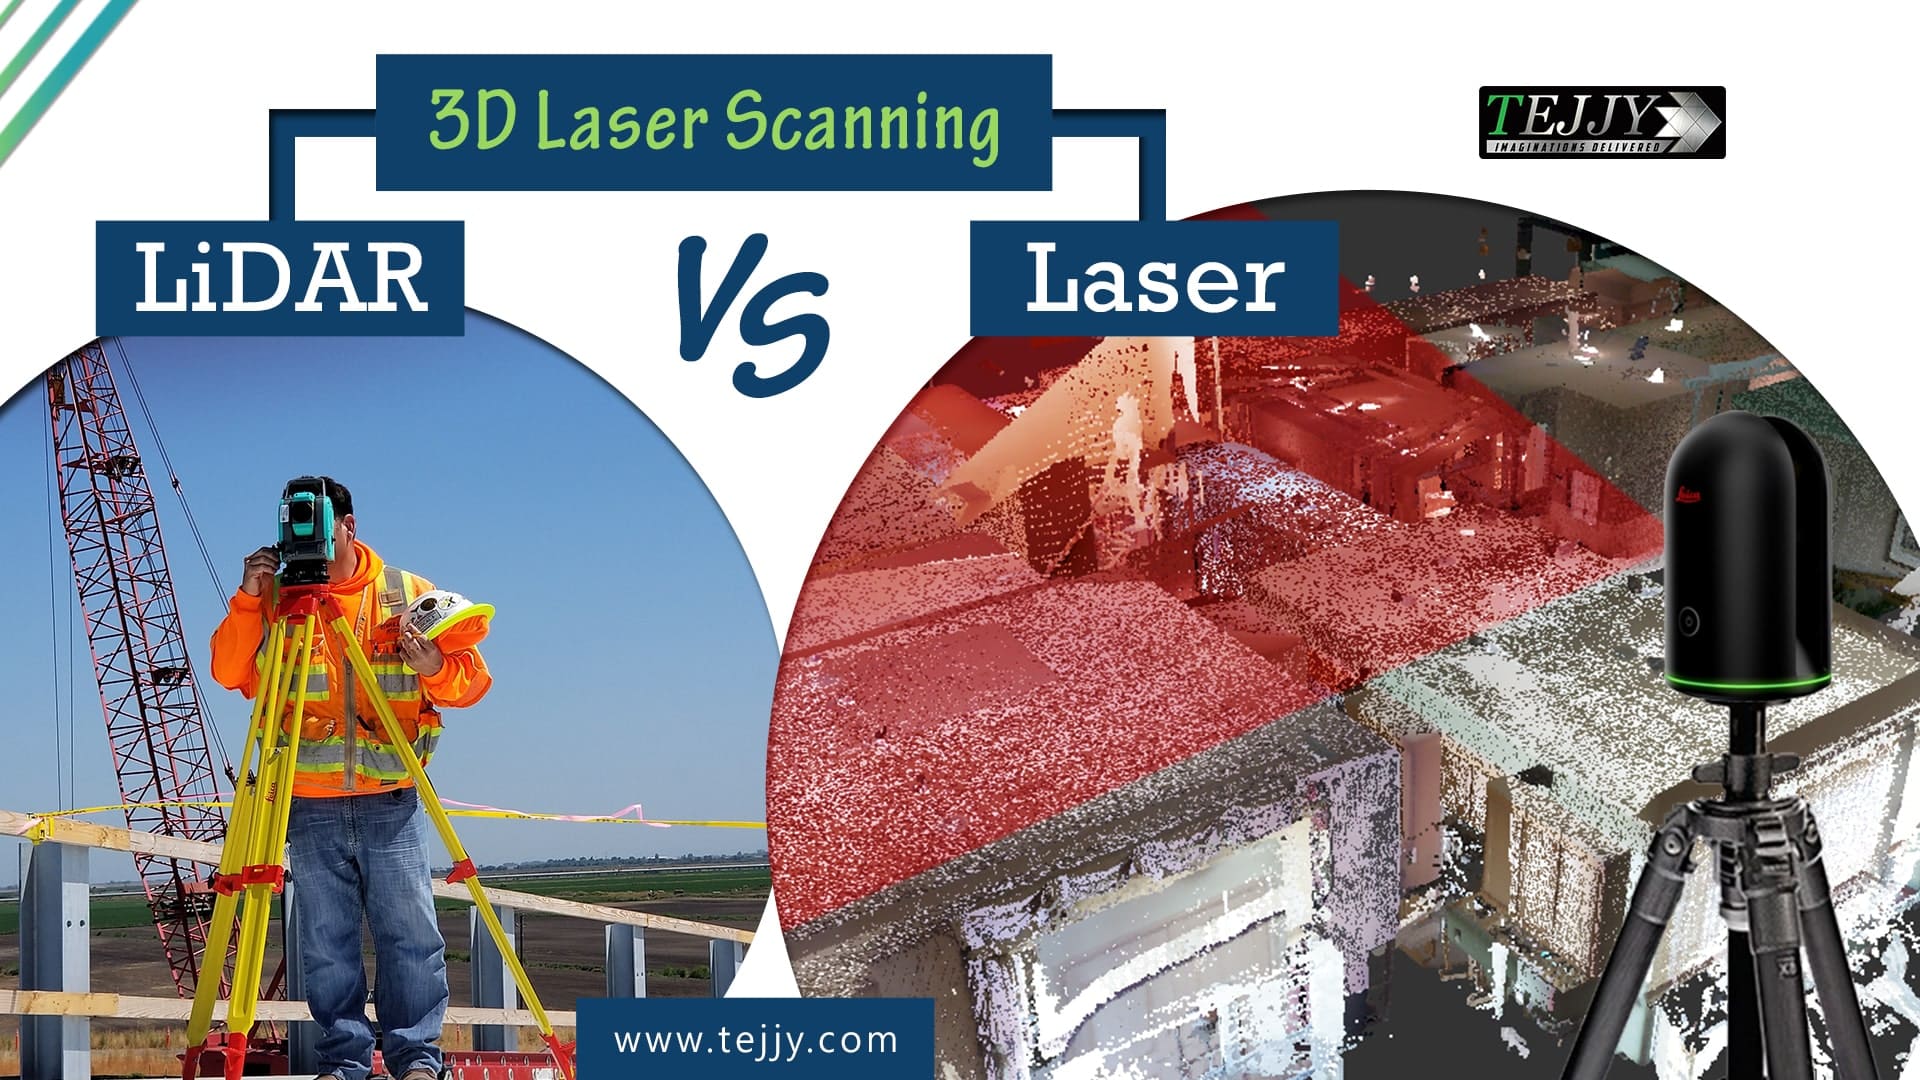 3D Laser Scanning LiDAR Vs Laser 1 